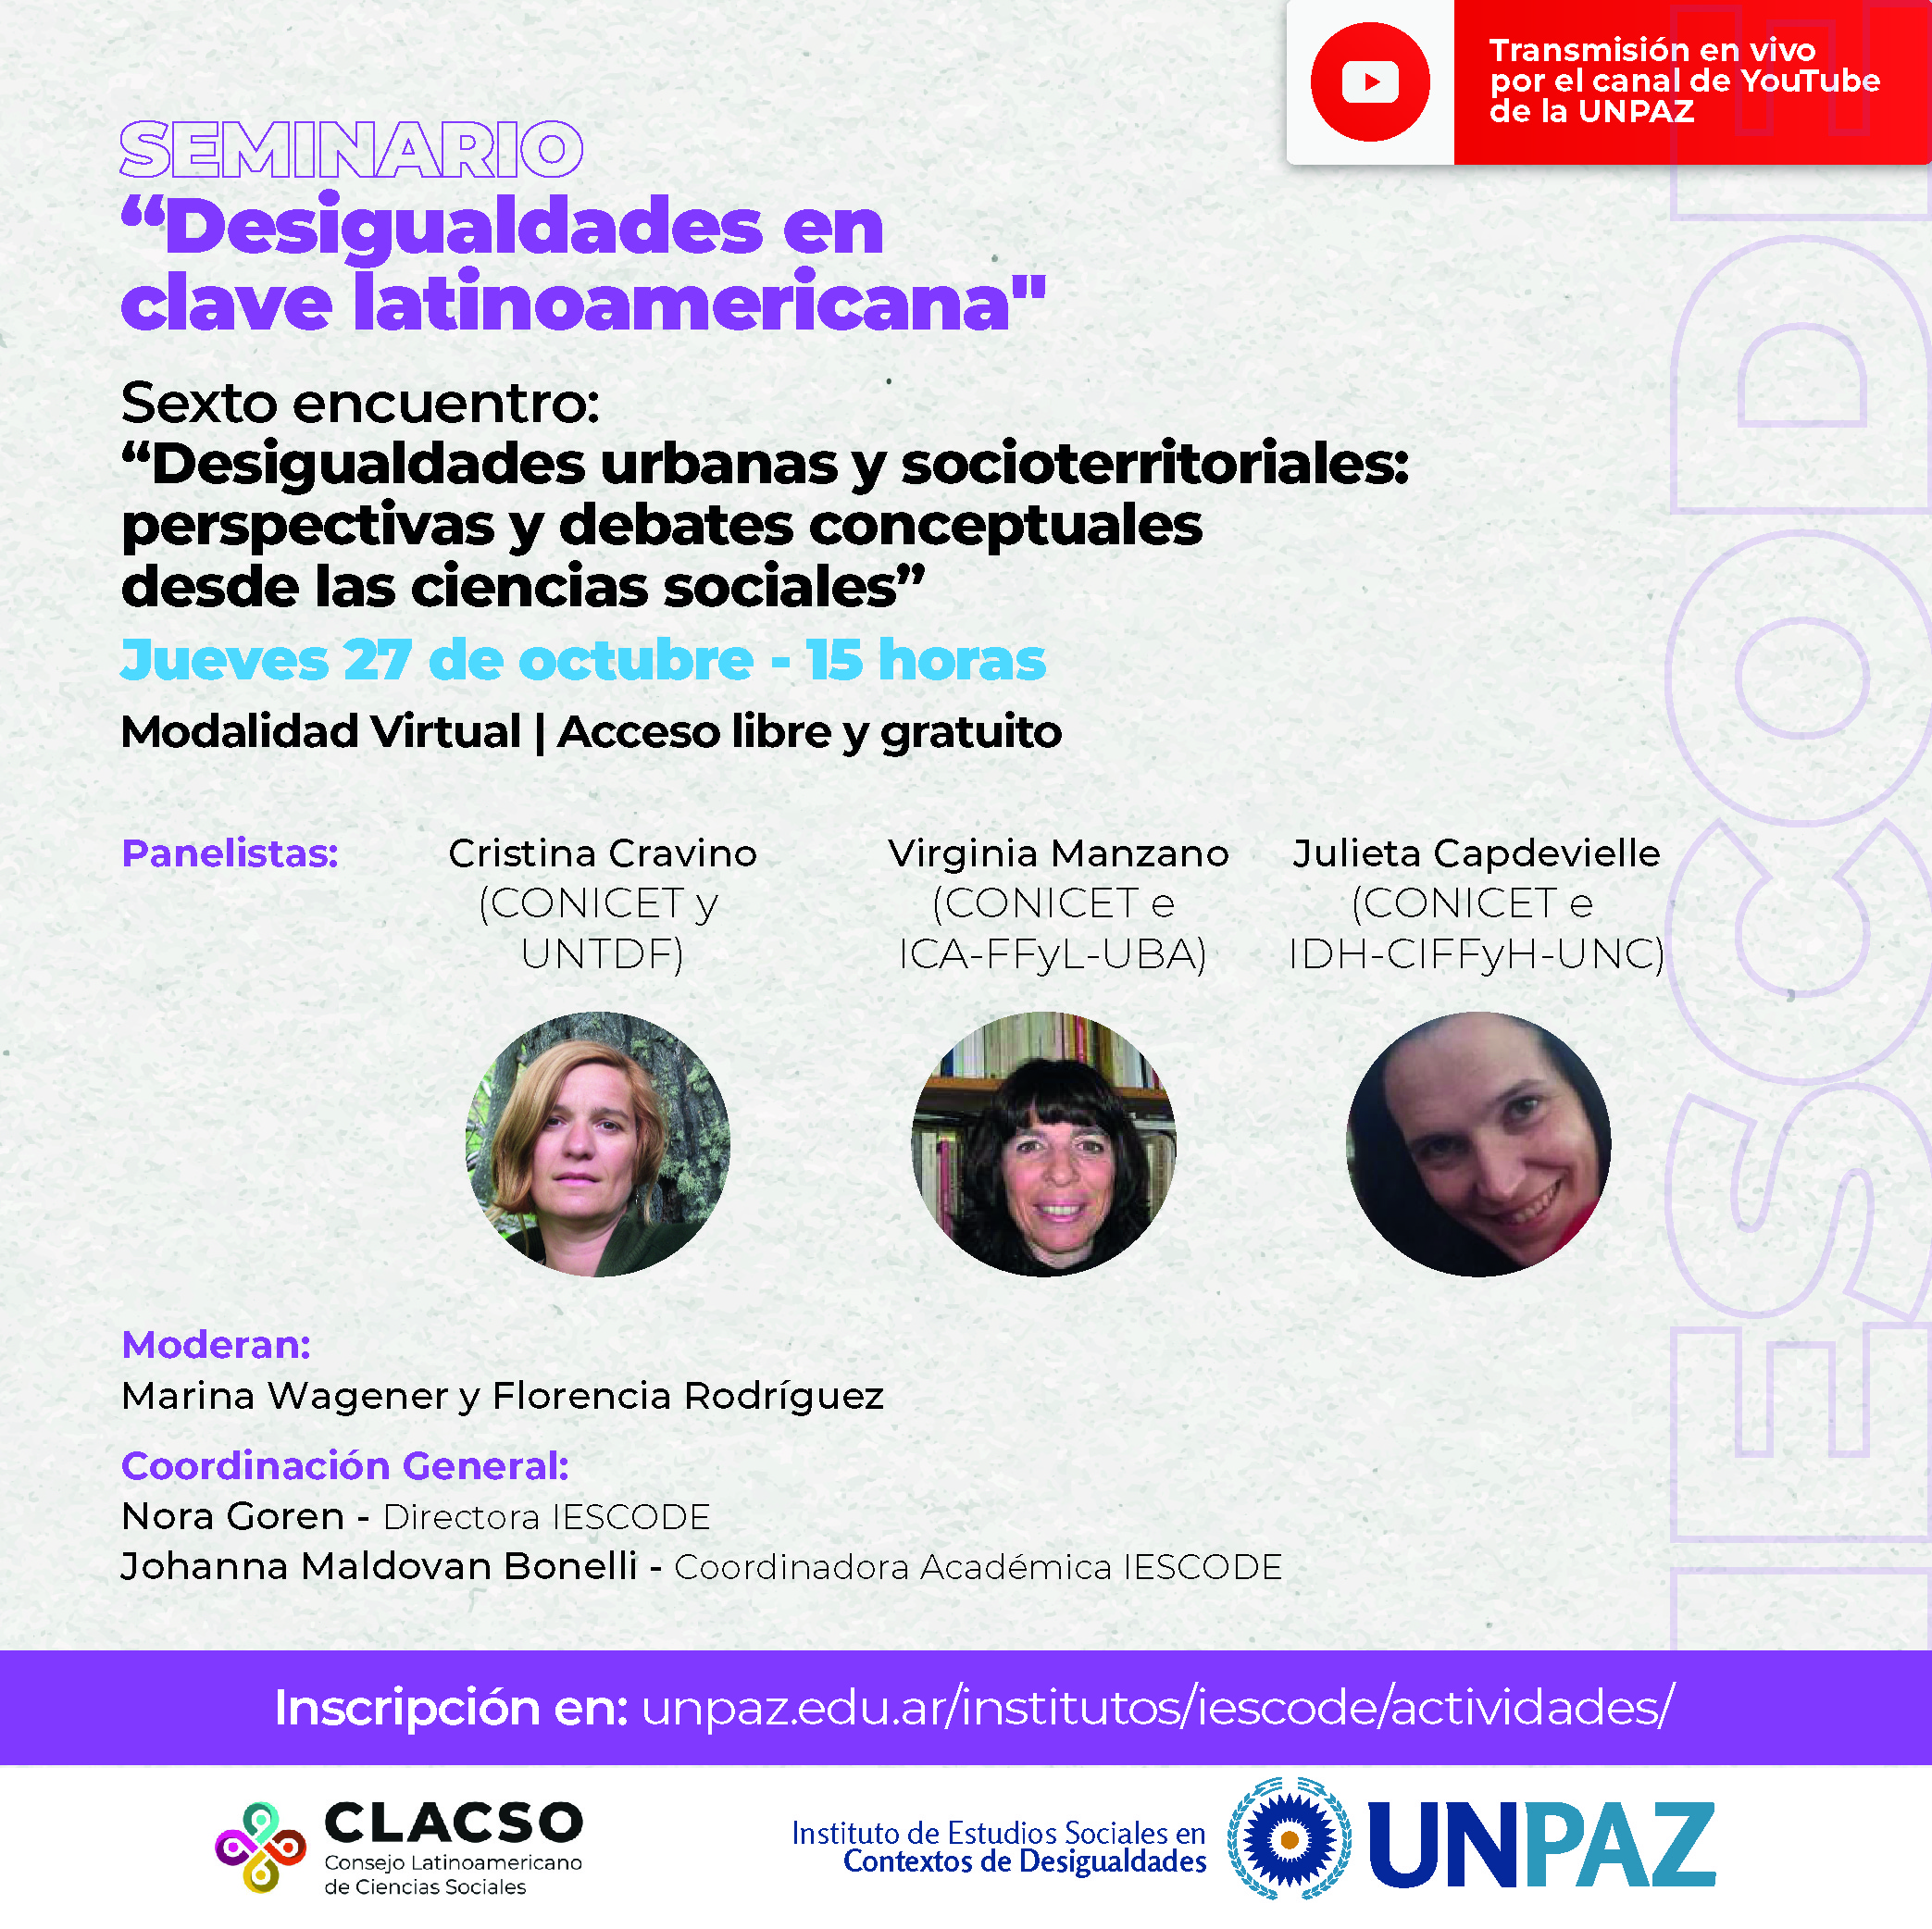 Sexto encuentro del seminario “Desigualdades en clave latinoamericana”